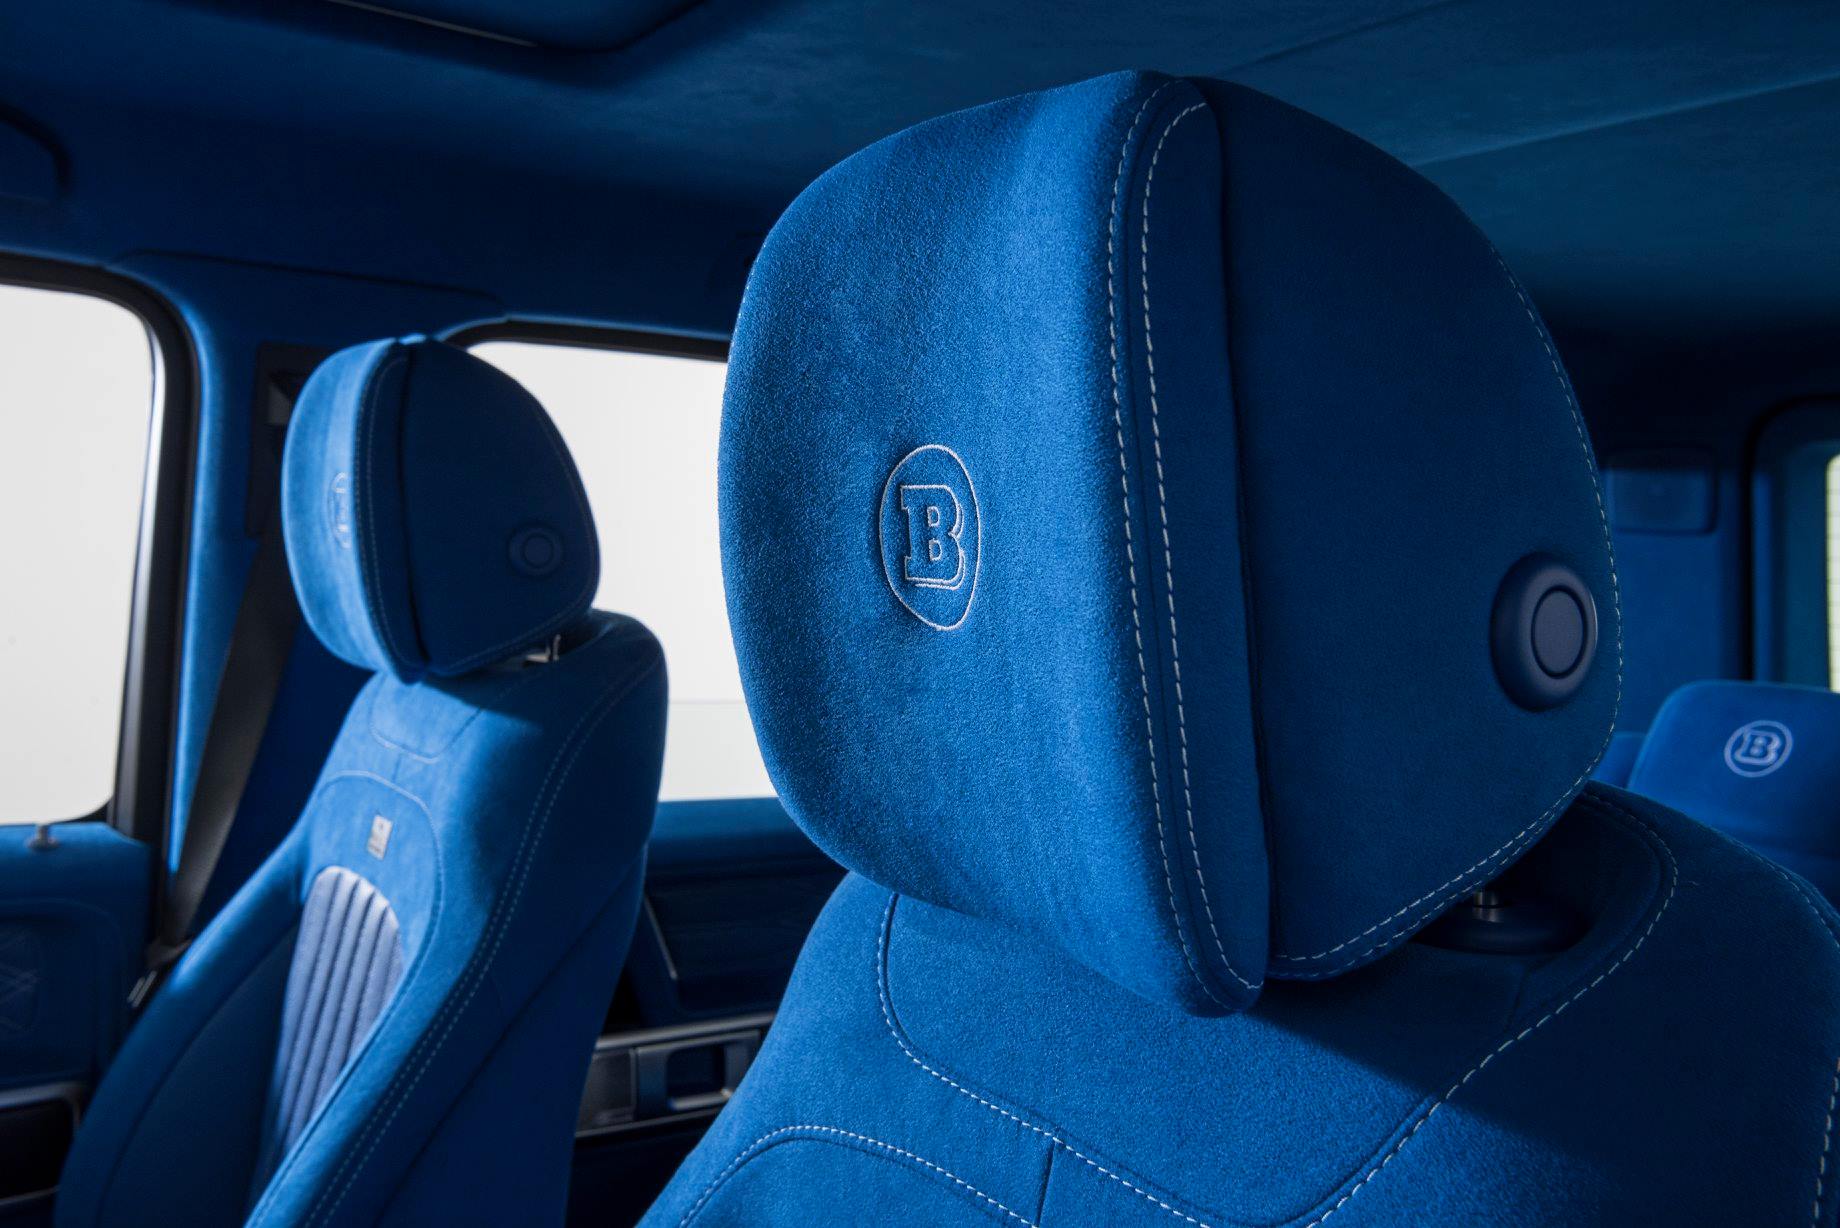 Задние сиденья столь же причудливы, как и передние, с перфорированными вставками и индивидуальным кожаным оборудованием для кондиционирования воздуха